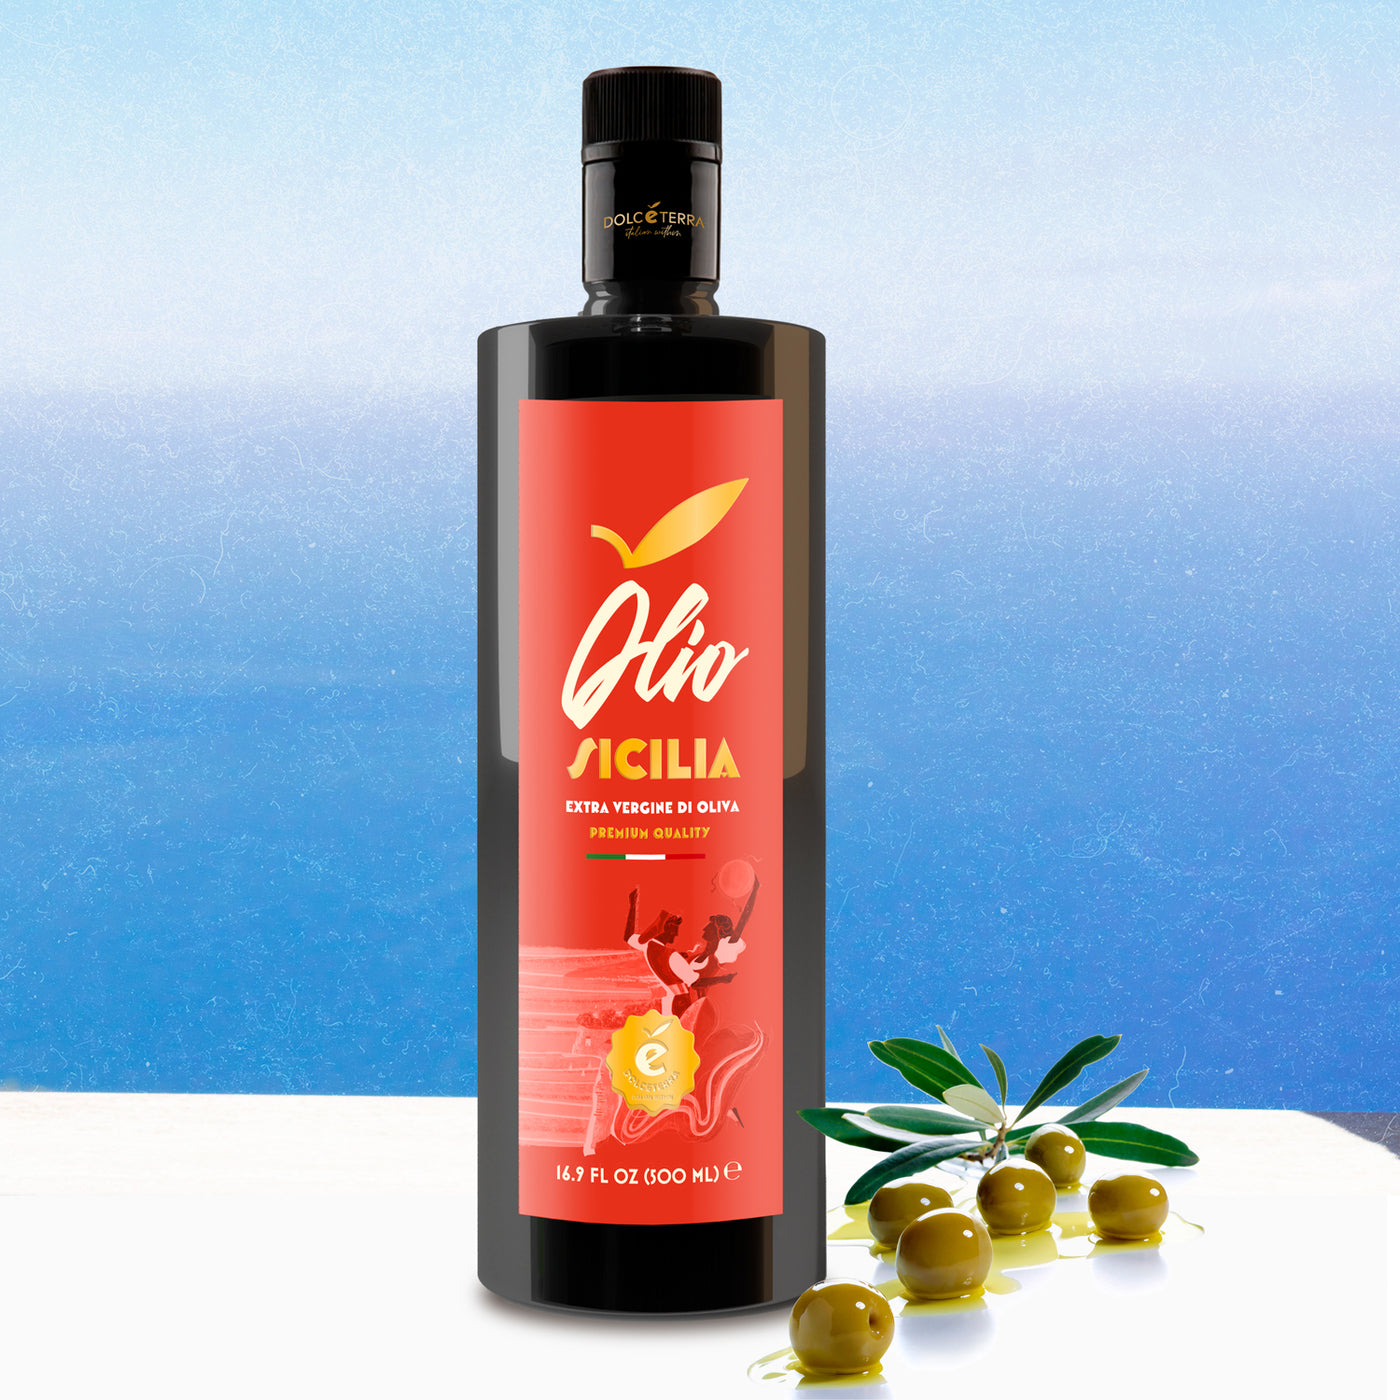 SICILIA Extra Virgin Olive Oil - DOLCETERRA